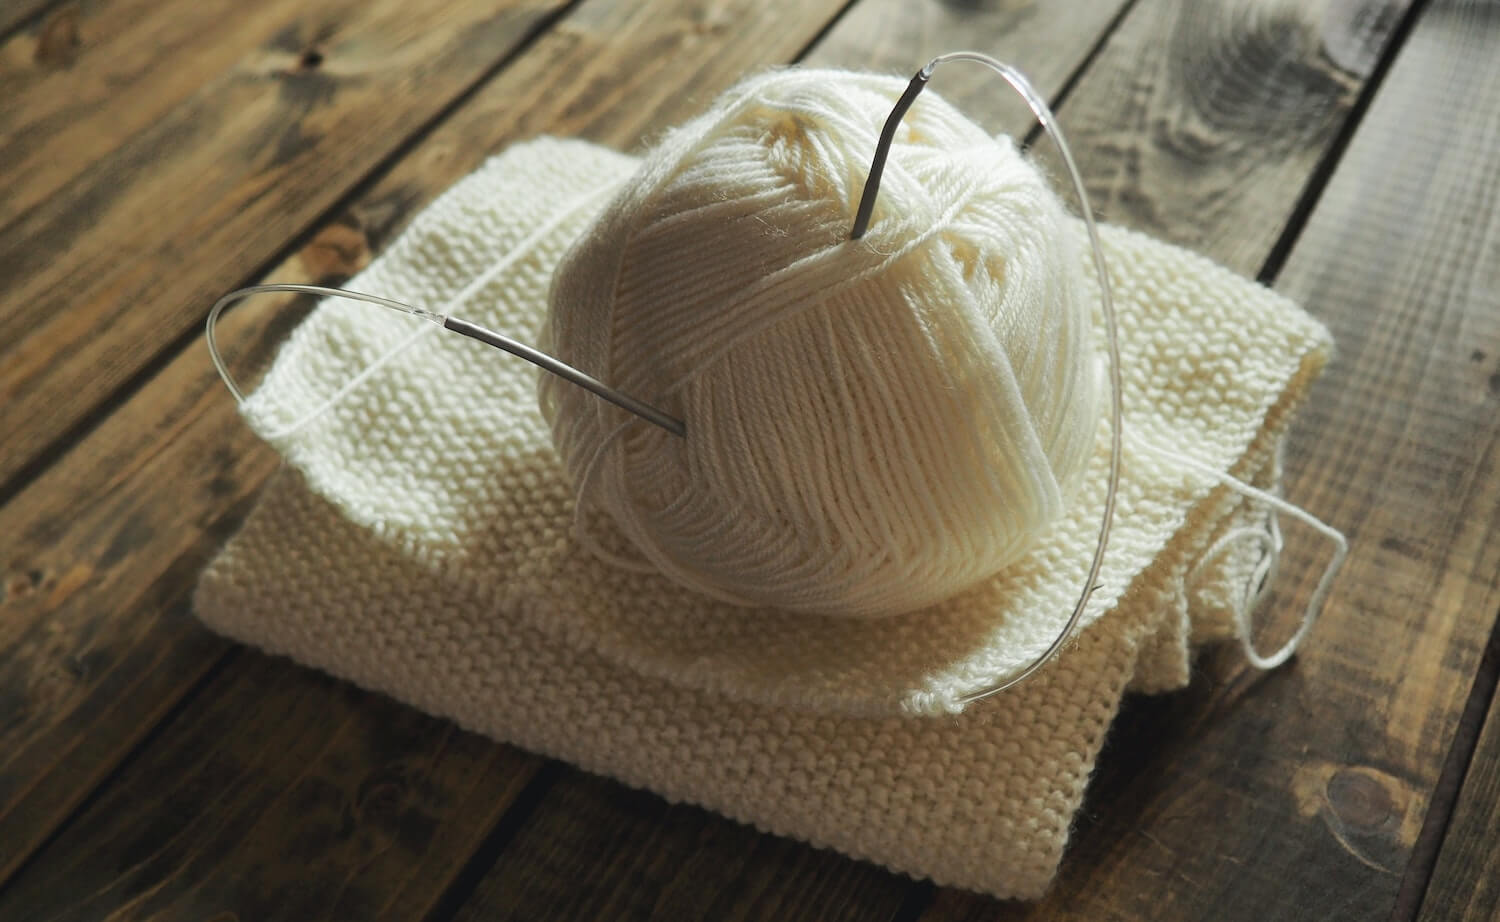 Les pulls à tricoter pour être tendance cet hiver ?